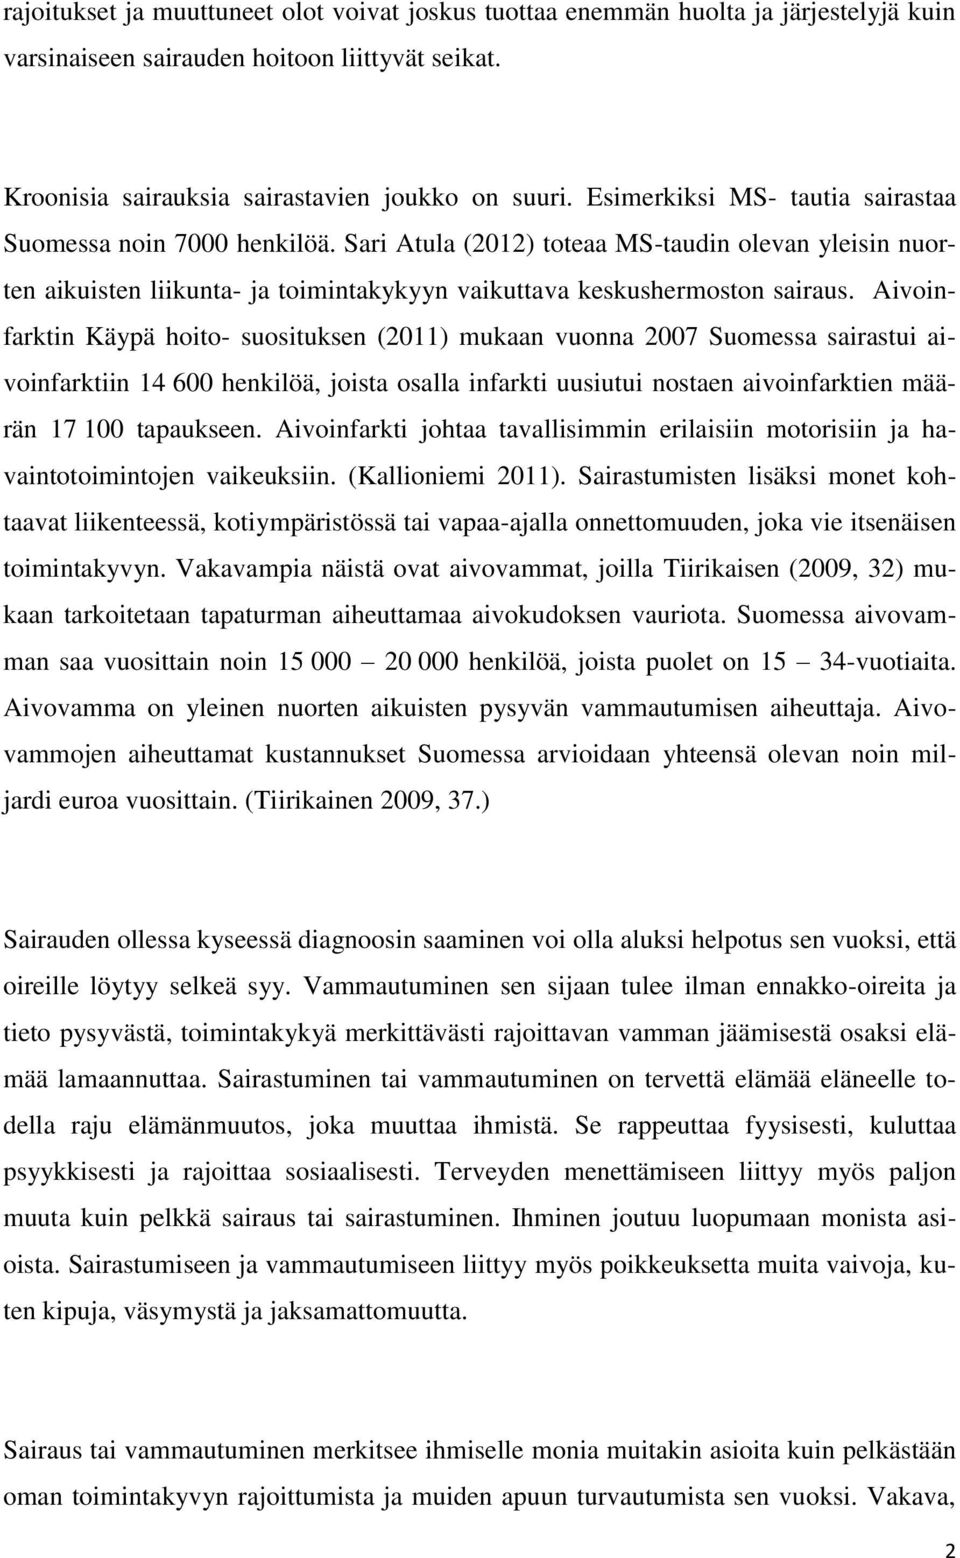 Aivoinfarktin Käypä hoito- suosituksen (2011) mukaan vuonna 2007 Suomessa sairastui aivoinfarktiin 14 600 henkilöä, joista osalla infarkti uusiutui nostaen aivoinfarktien määrän 17 100 tapaukseen.